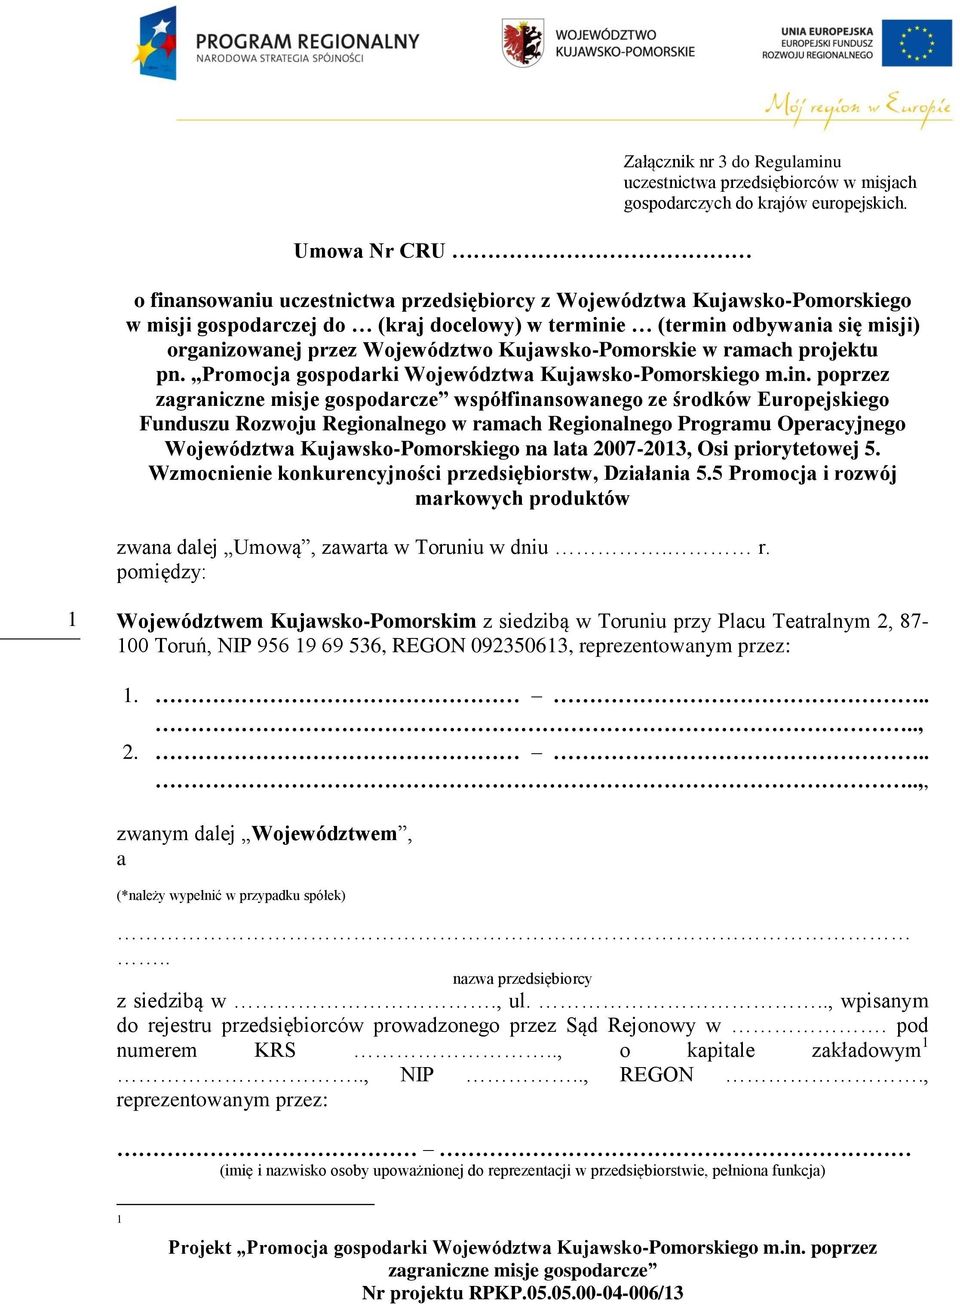 Kujawsko-Pomorskie w ramach projektu pn. Promocja gospodarki Województwa Kujawsko-Pomorskiego m.in.